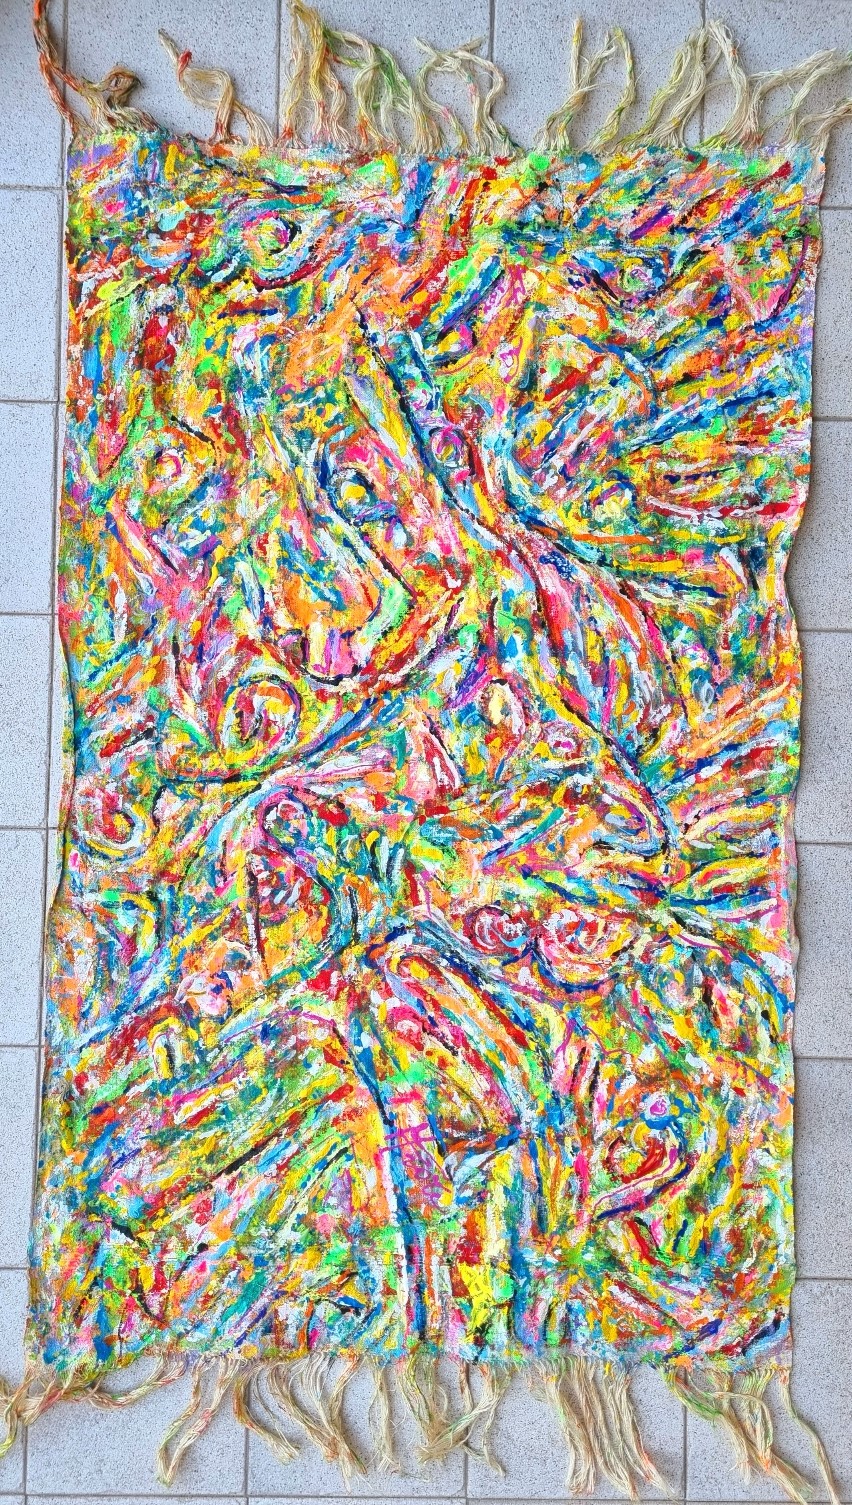 Mattia Fiore - 612 - Dipinto tecnica mista su asciugamano di lino di Ottocento - 58 x 94 cm